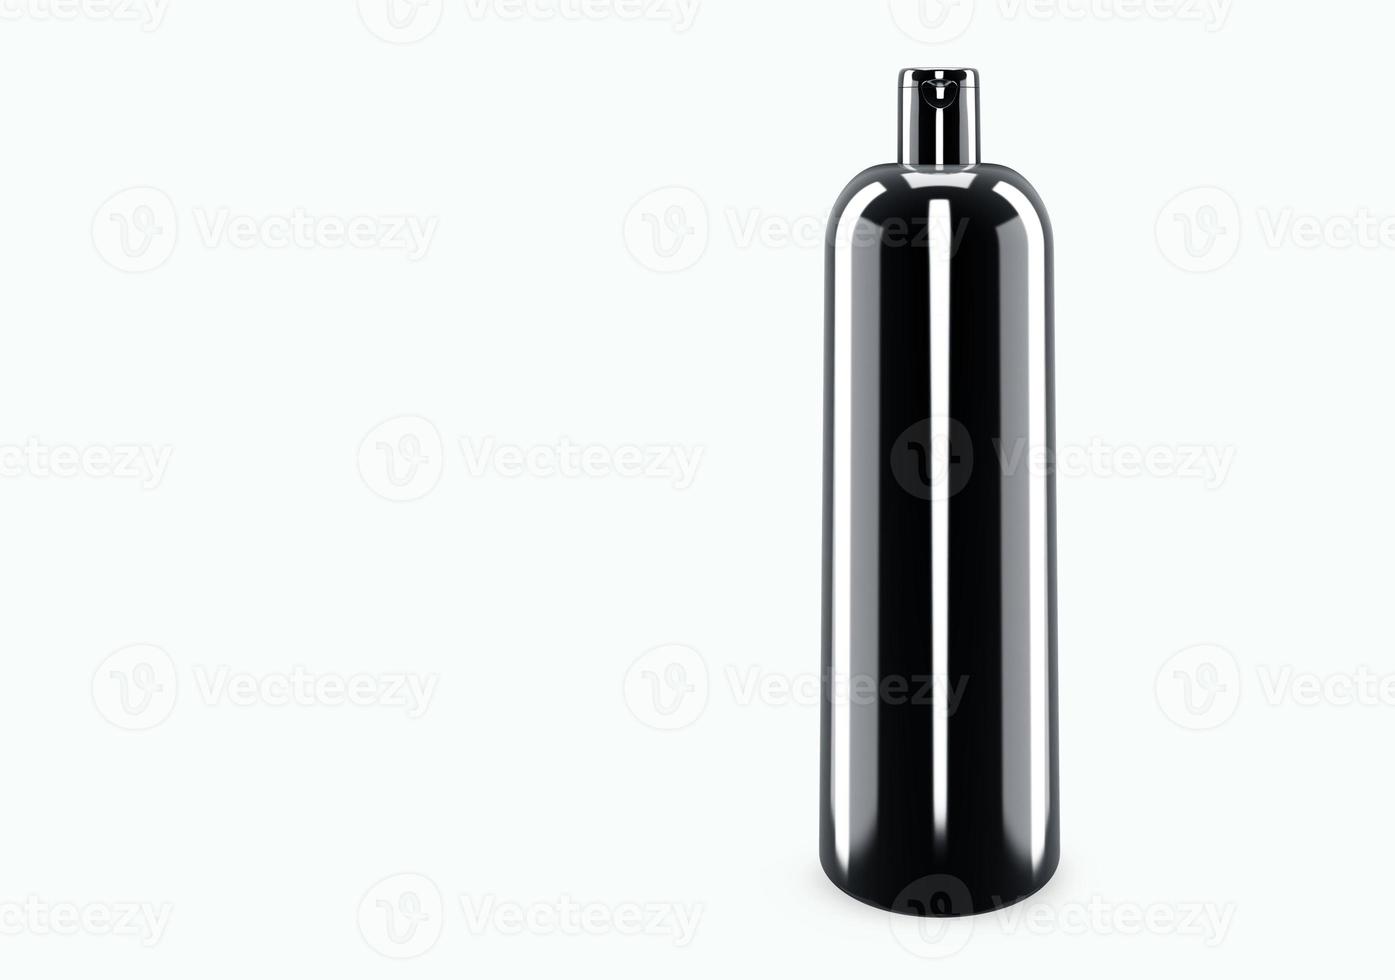 Maquette de shampoing en plastique noir brillant isolé de la conception de l'emballage de shampoing en plastique de fond. modèle vierge d'hygiène, de soins médicaux, corporels ou faciaux. illustration 3D photo